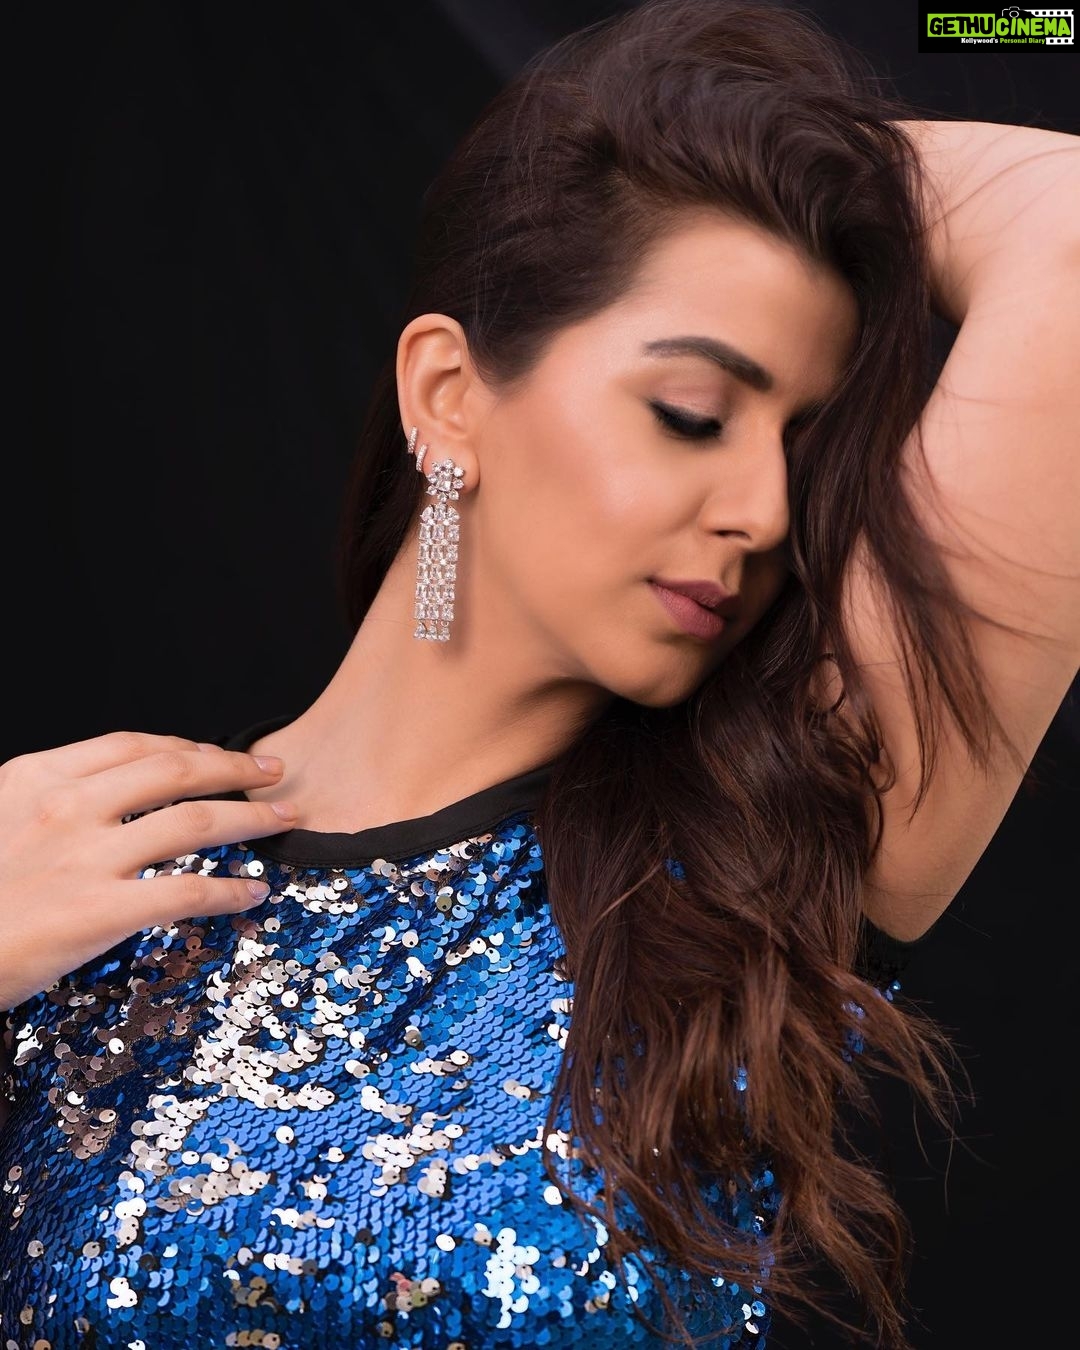 Nikki Galrani Hot Sex Hd - Actress Nikki Galrani HD Photos and Wallpapers January 2022 - Gethu Cinema